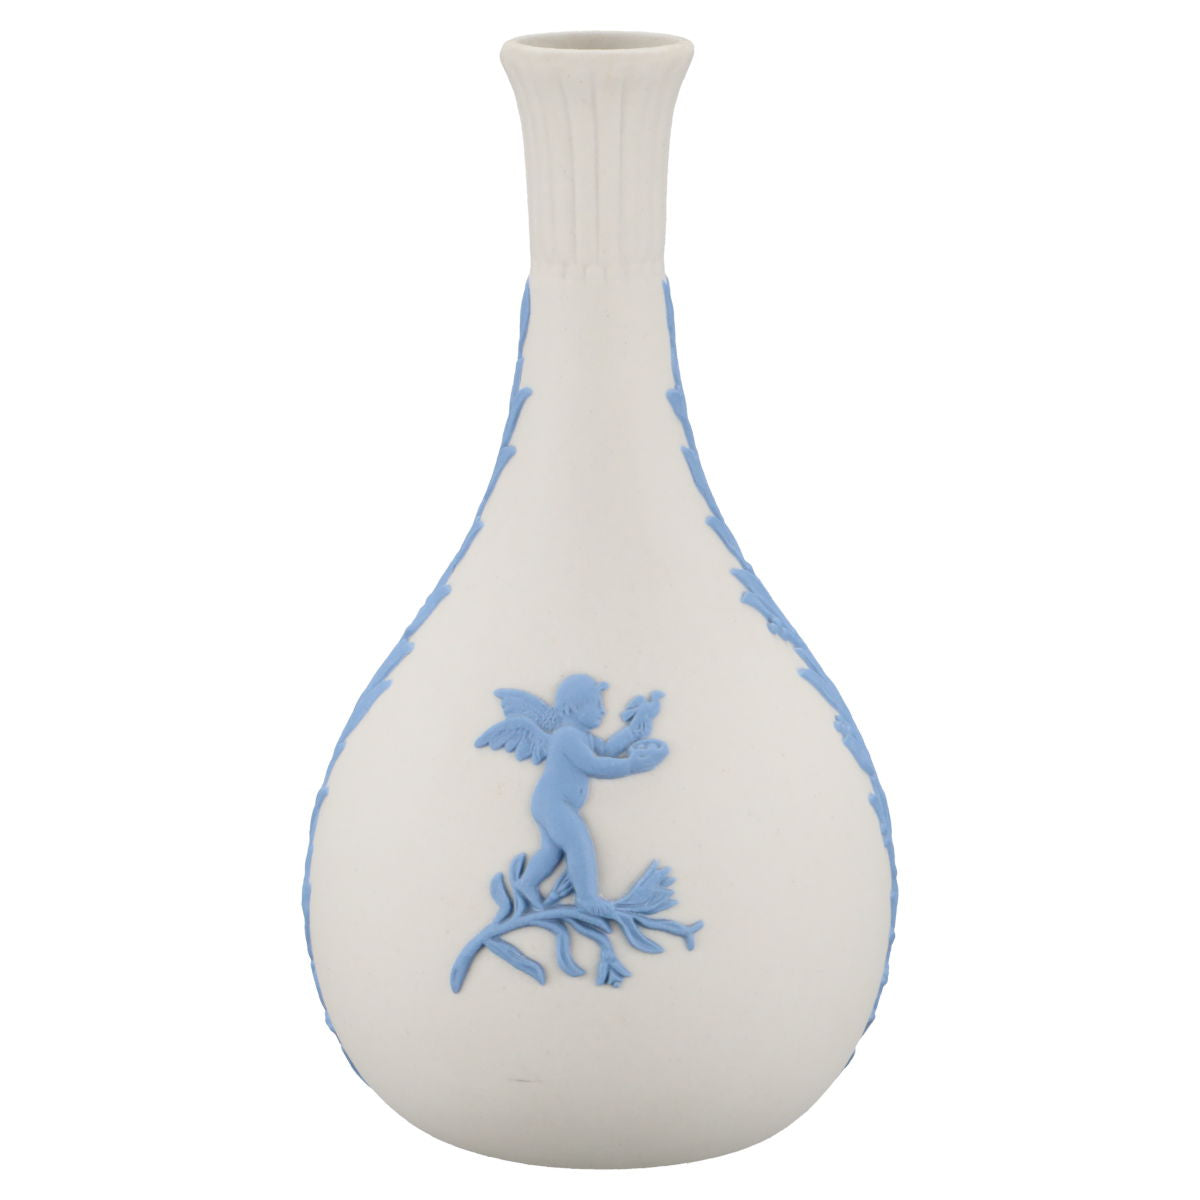 Vase blue on white